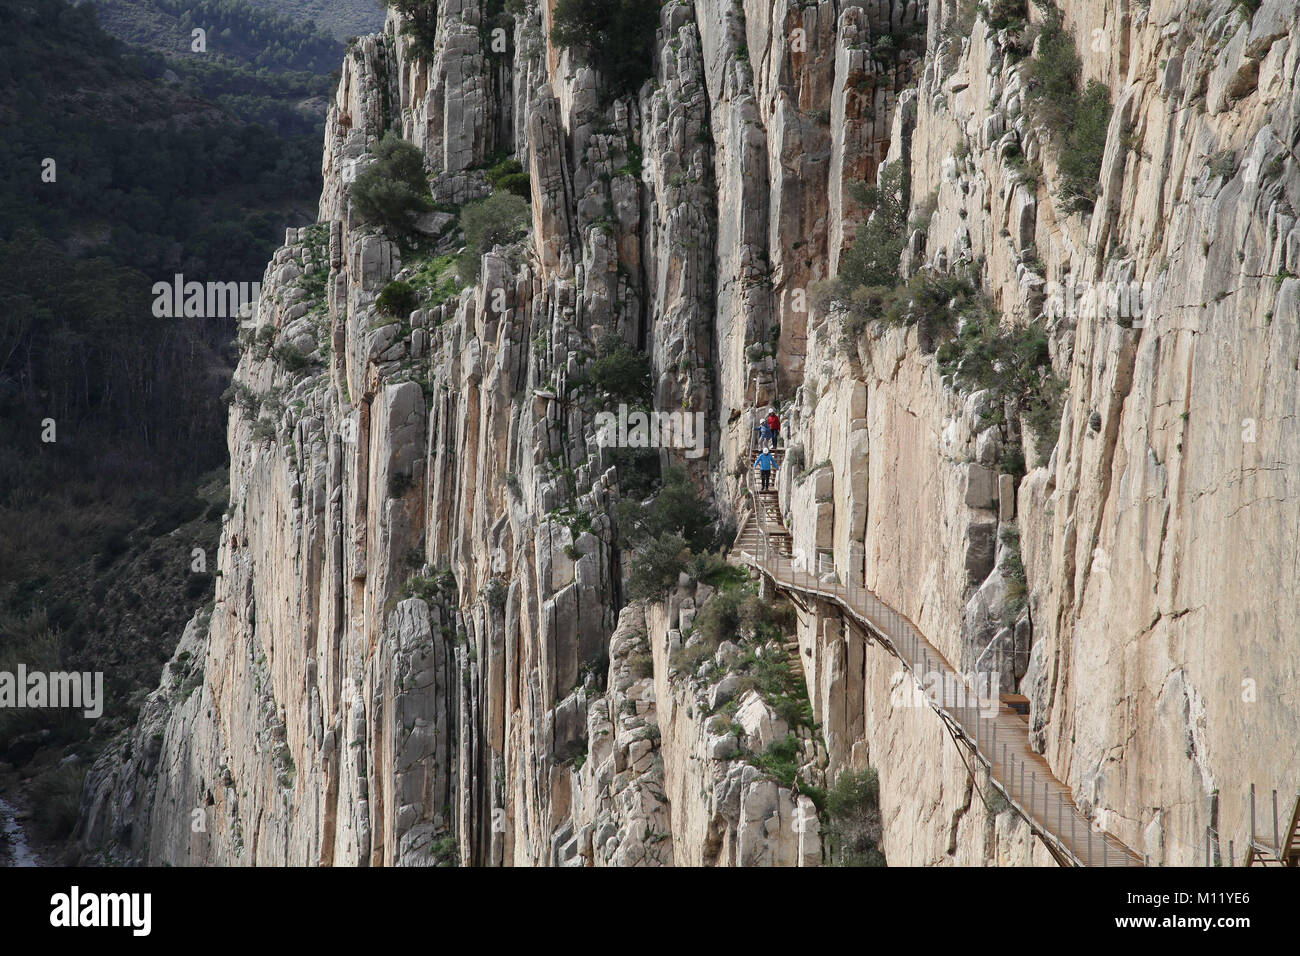 Camino oder Caminito del Rey. Ein Wanderweg oder Promenade entlang der Schlucht El Chorro, Málaga Spanien. 2,9 km Entfernung. Stockfoto